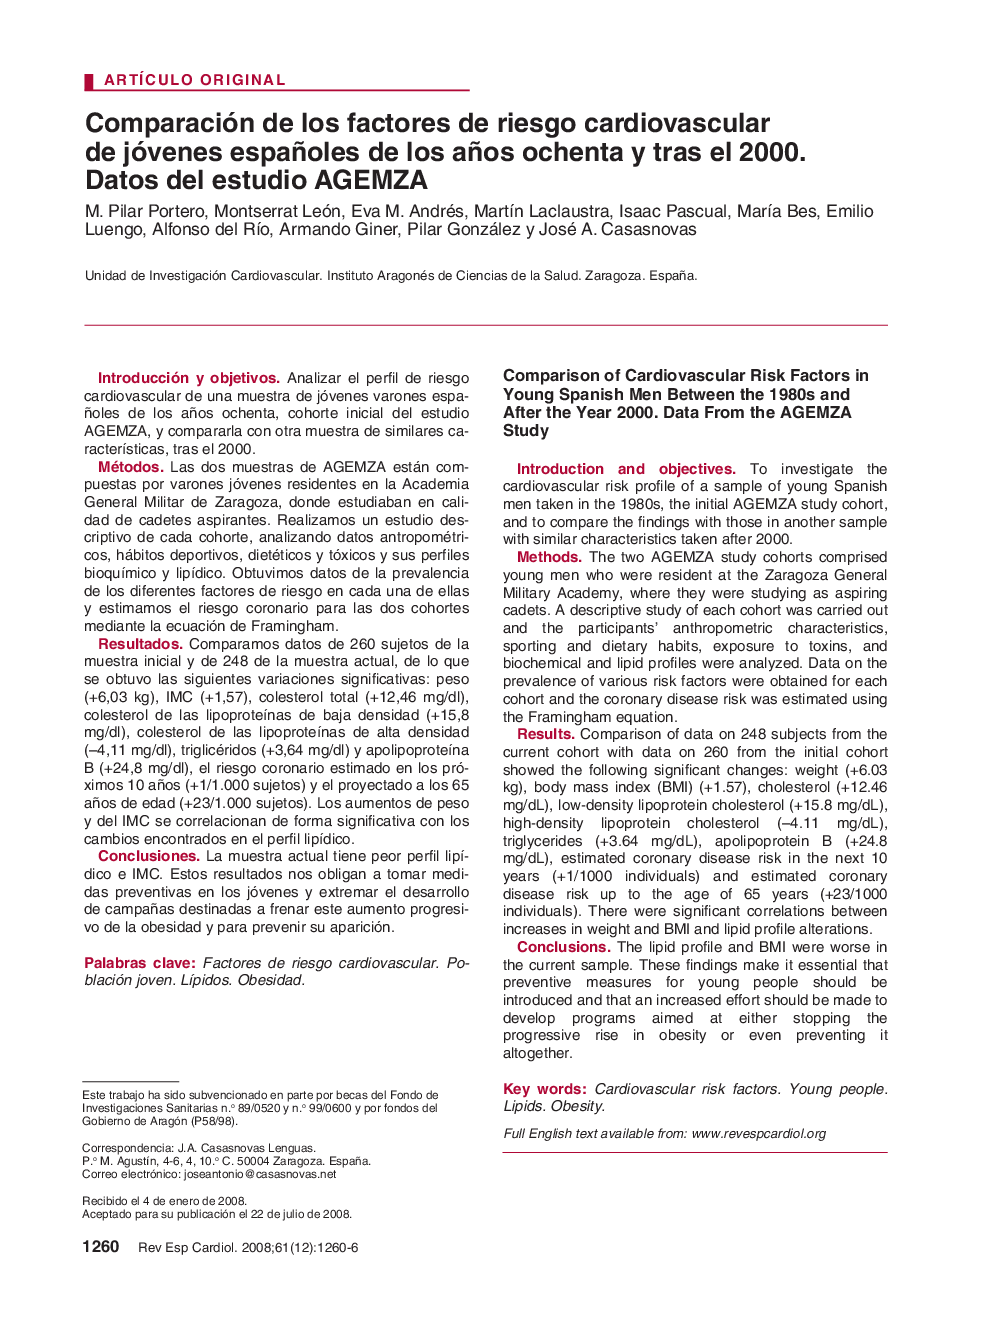 Comparación de los factores de riesgo cardiovascular de jóvenes españoles de los años ochenta y tras el 2000. Datos del estudio AGEMZA